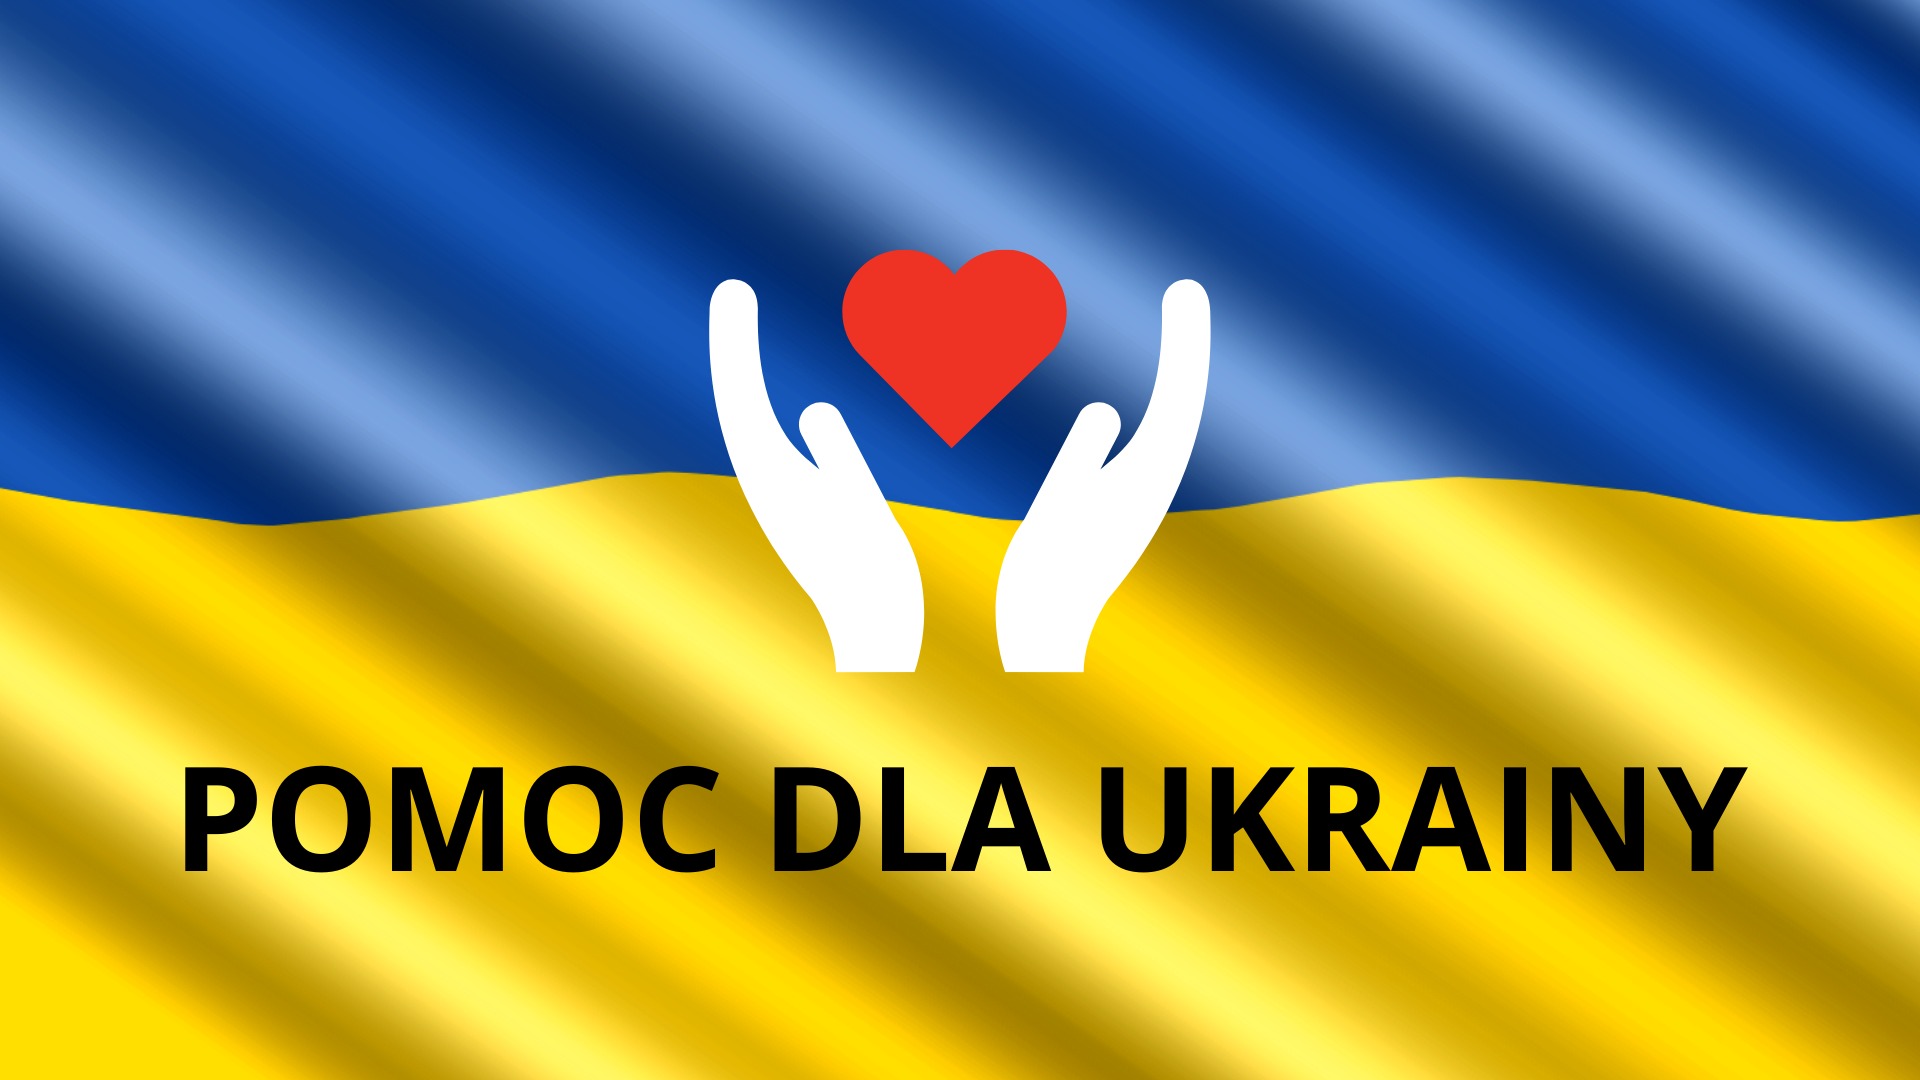  Pomoc dla rodzin z Ukrainy - Obrazek 1